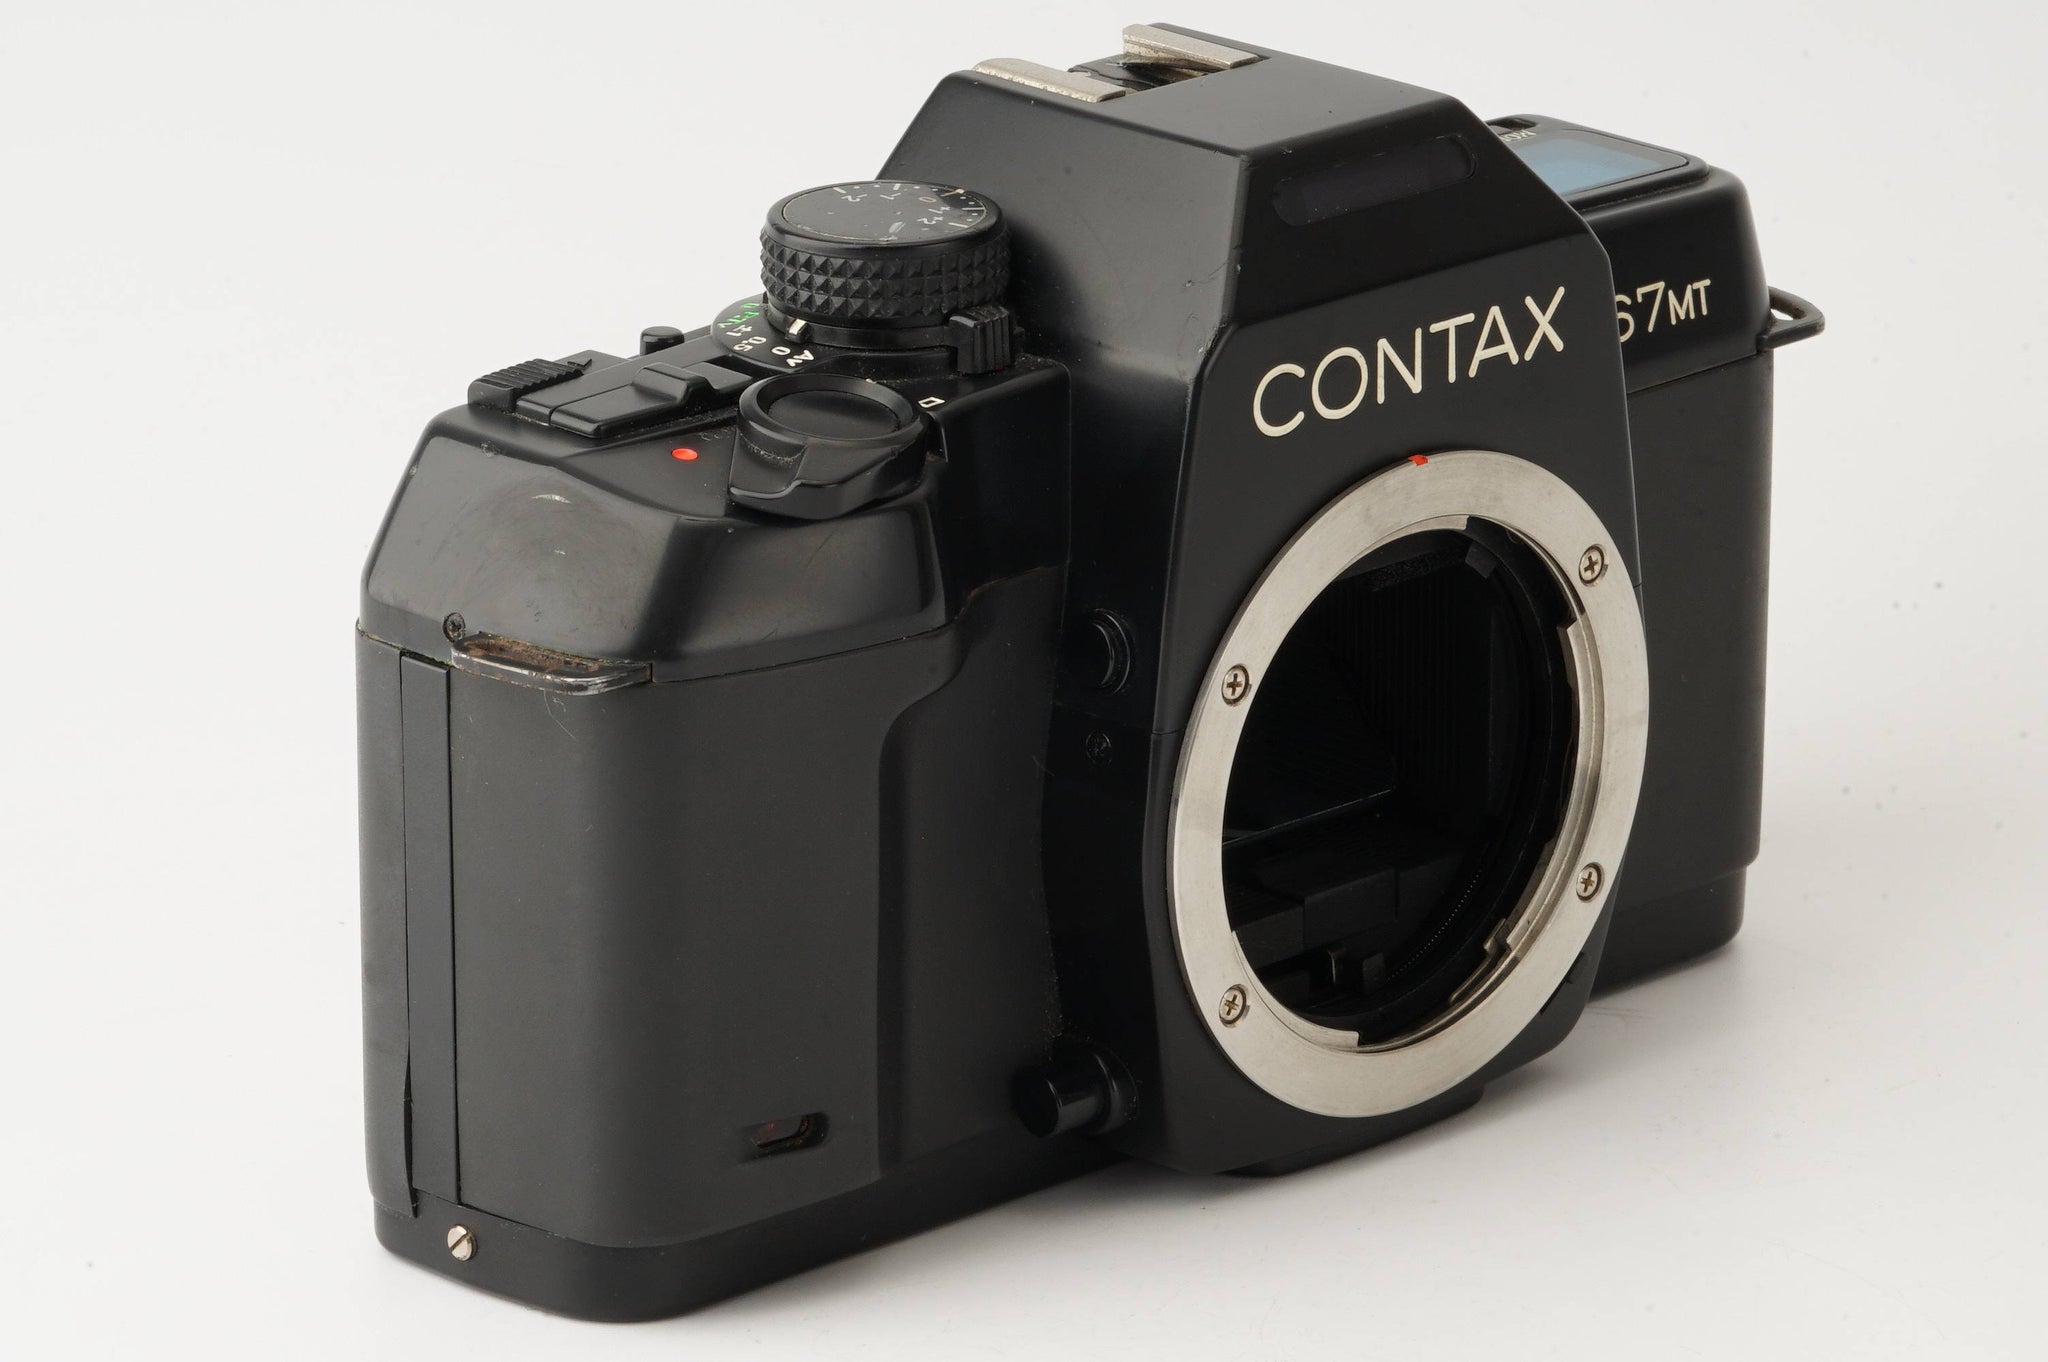 フィルムカメラCONTAX 167MT レンズセット